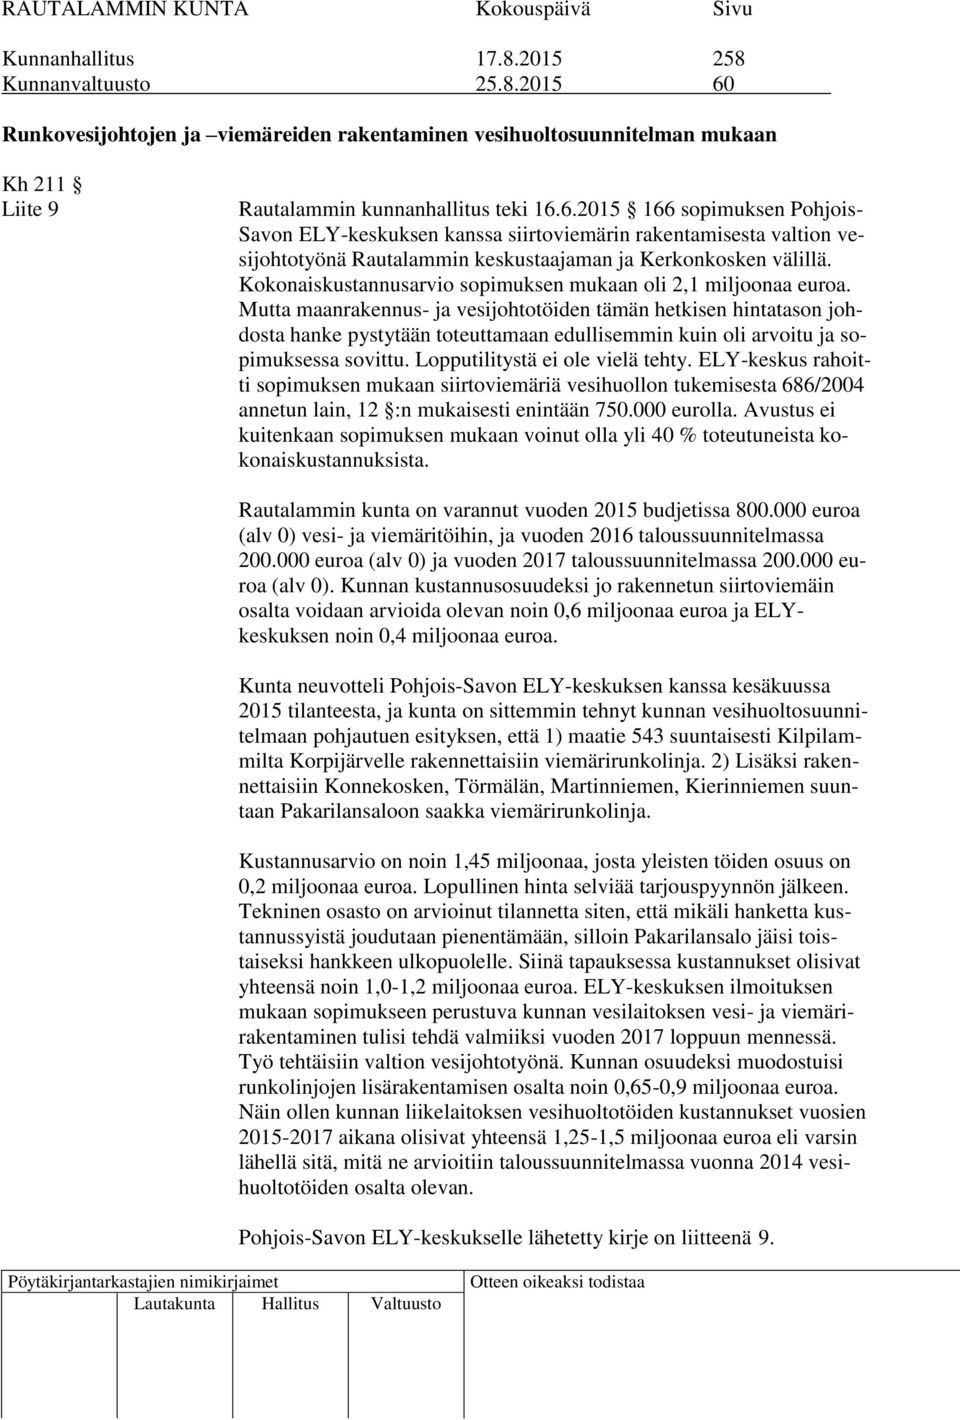 6.2015 166 sopimuksen Pohjois- Savon ELY-keskuksen kanssa siirtoviemärin rakentamisesta valtion vesijohtotyönä Rautalammin keskustaajaman ja Kerkonkosken välillä.